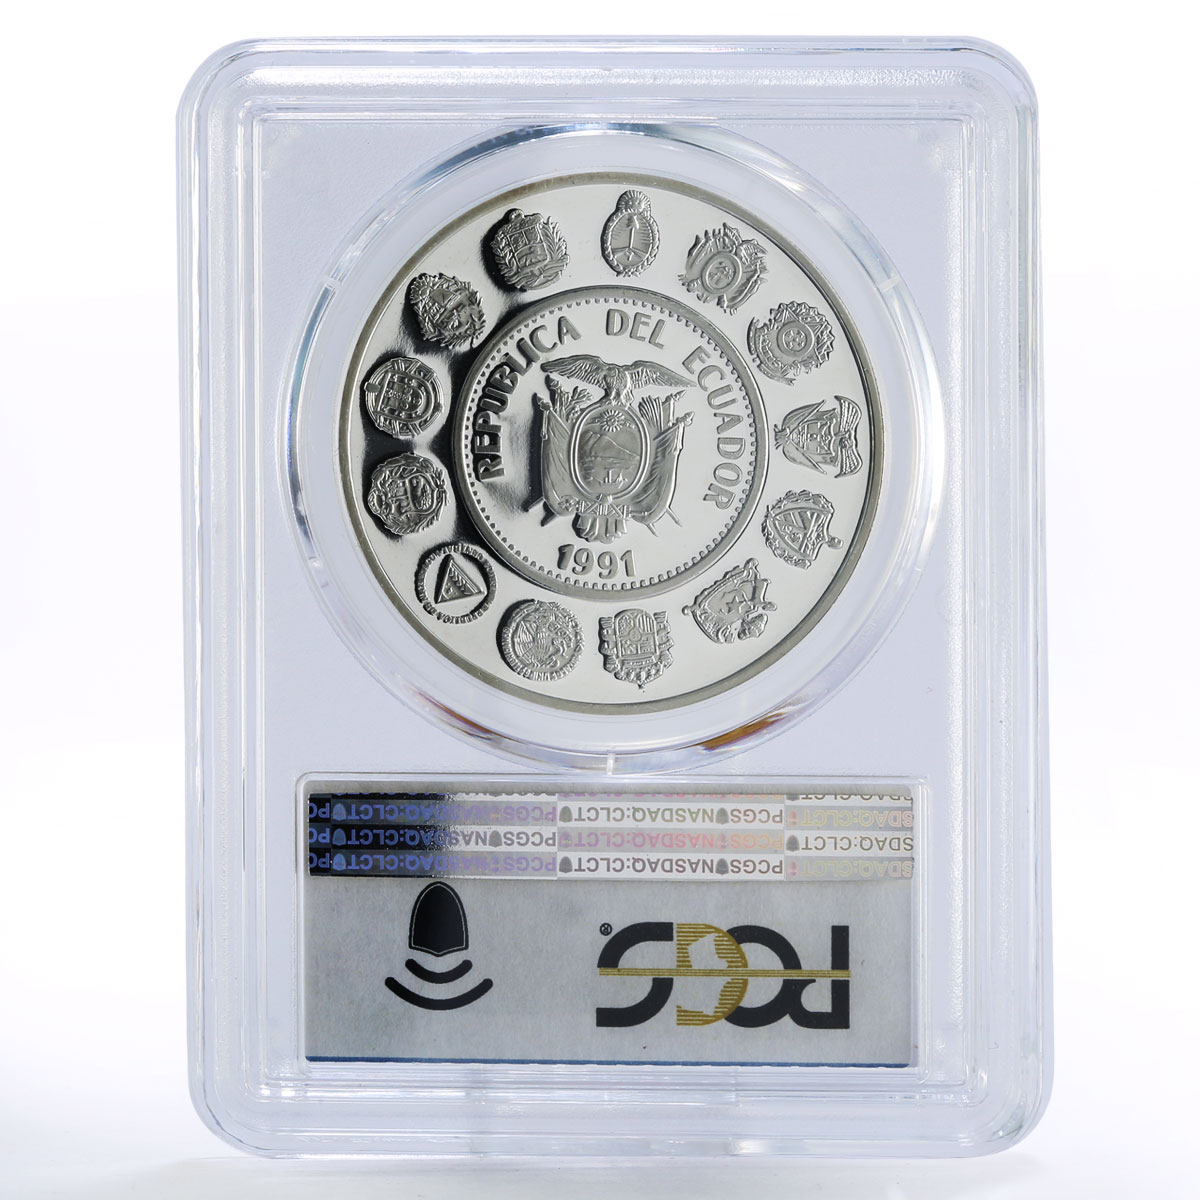 Ecuador 5000 sucres Columbus Ships Clippers PR68 PCGS silver coin 1991